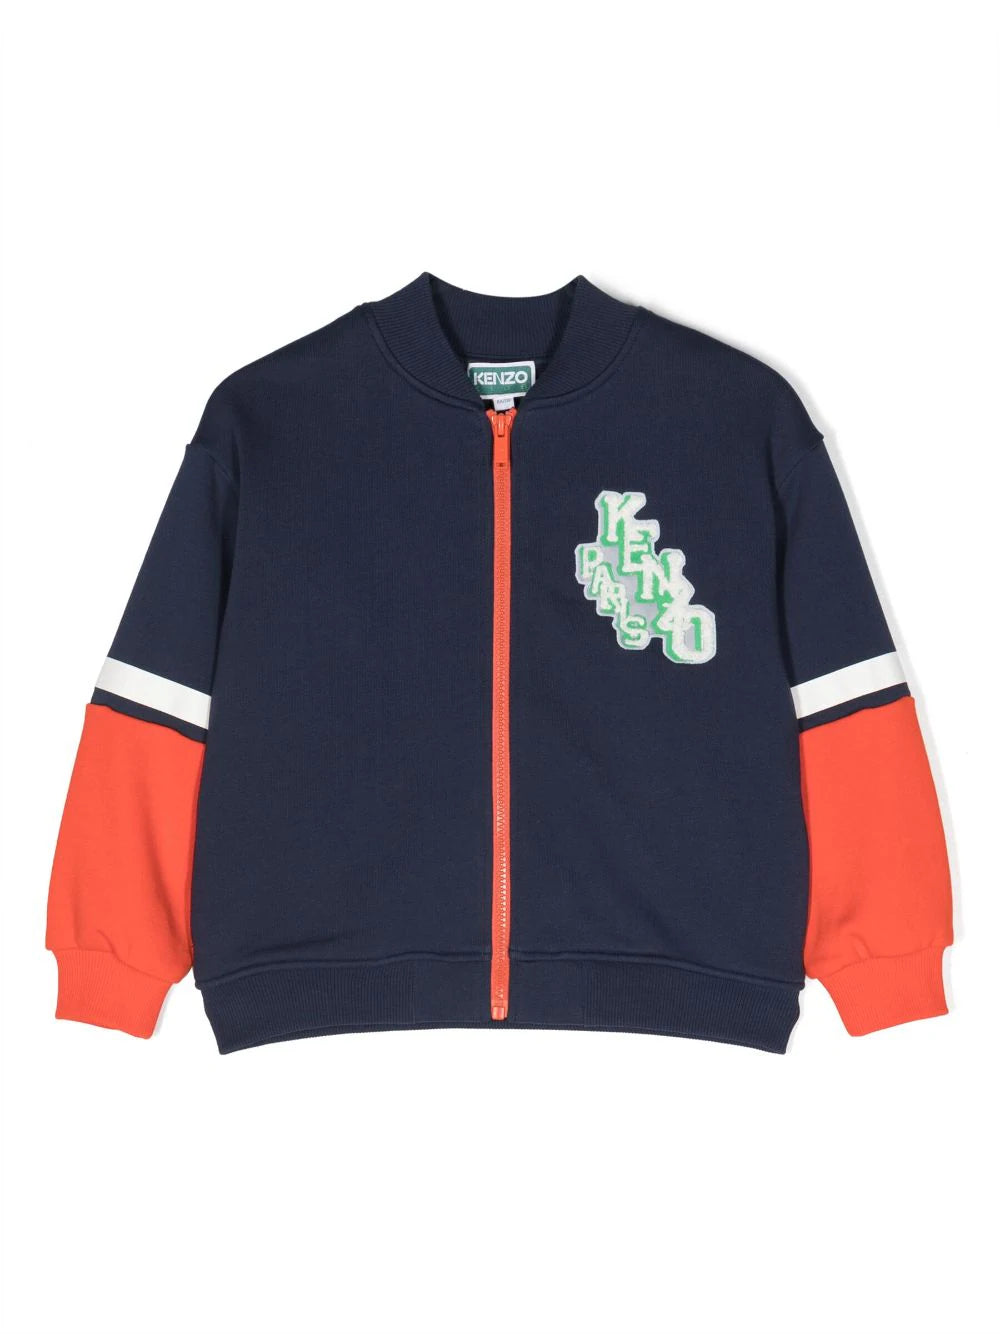 logo-patch zip-up sweatshirt